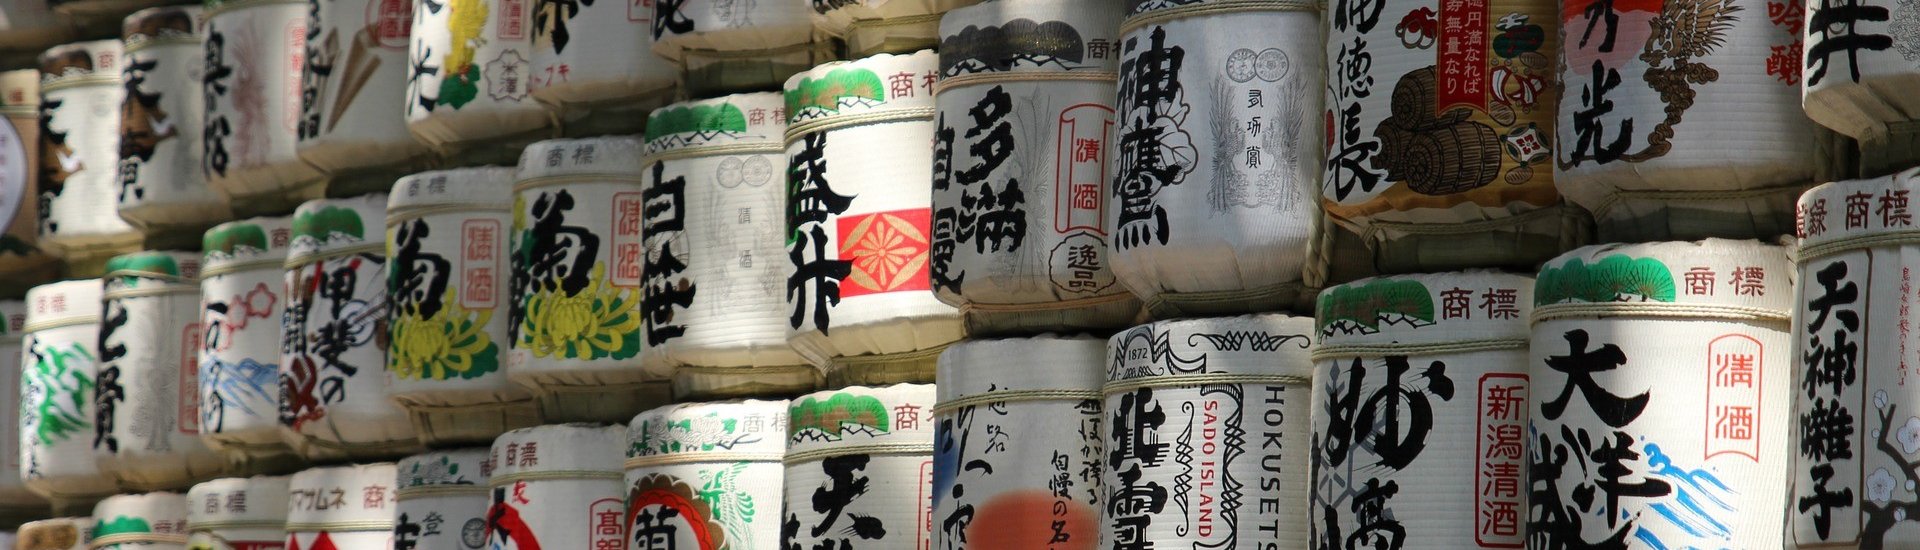 Sake Jars in Japan